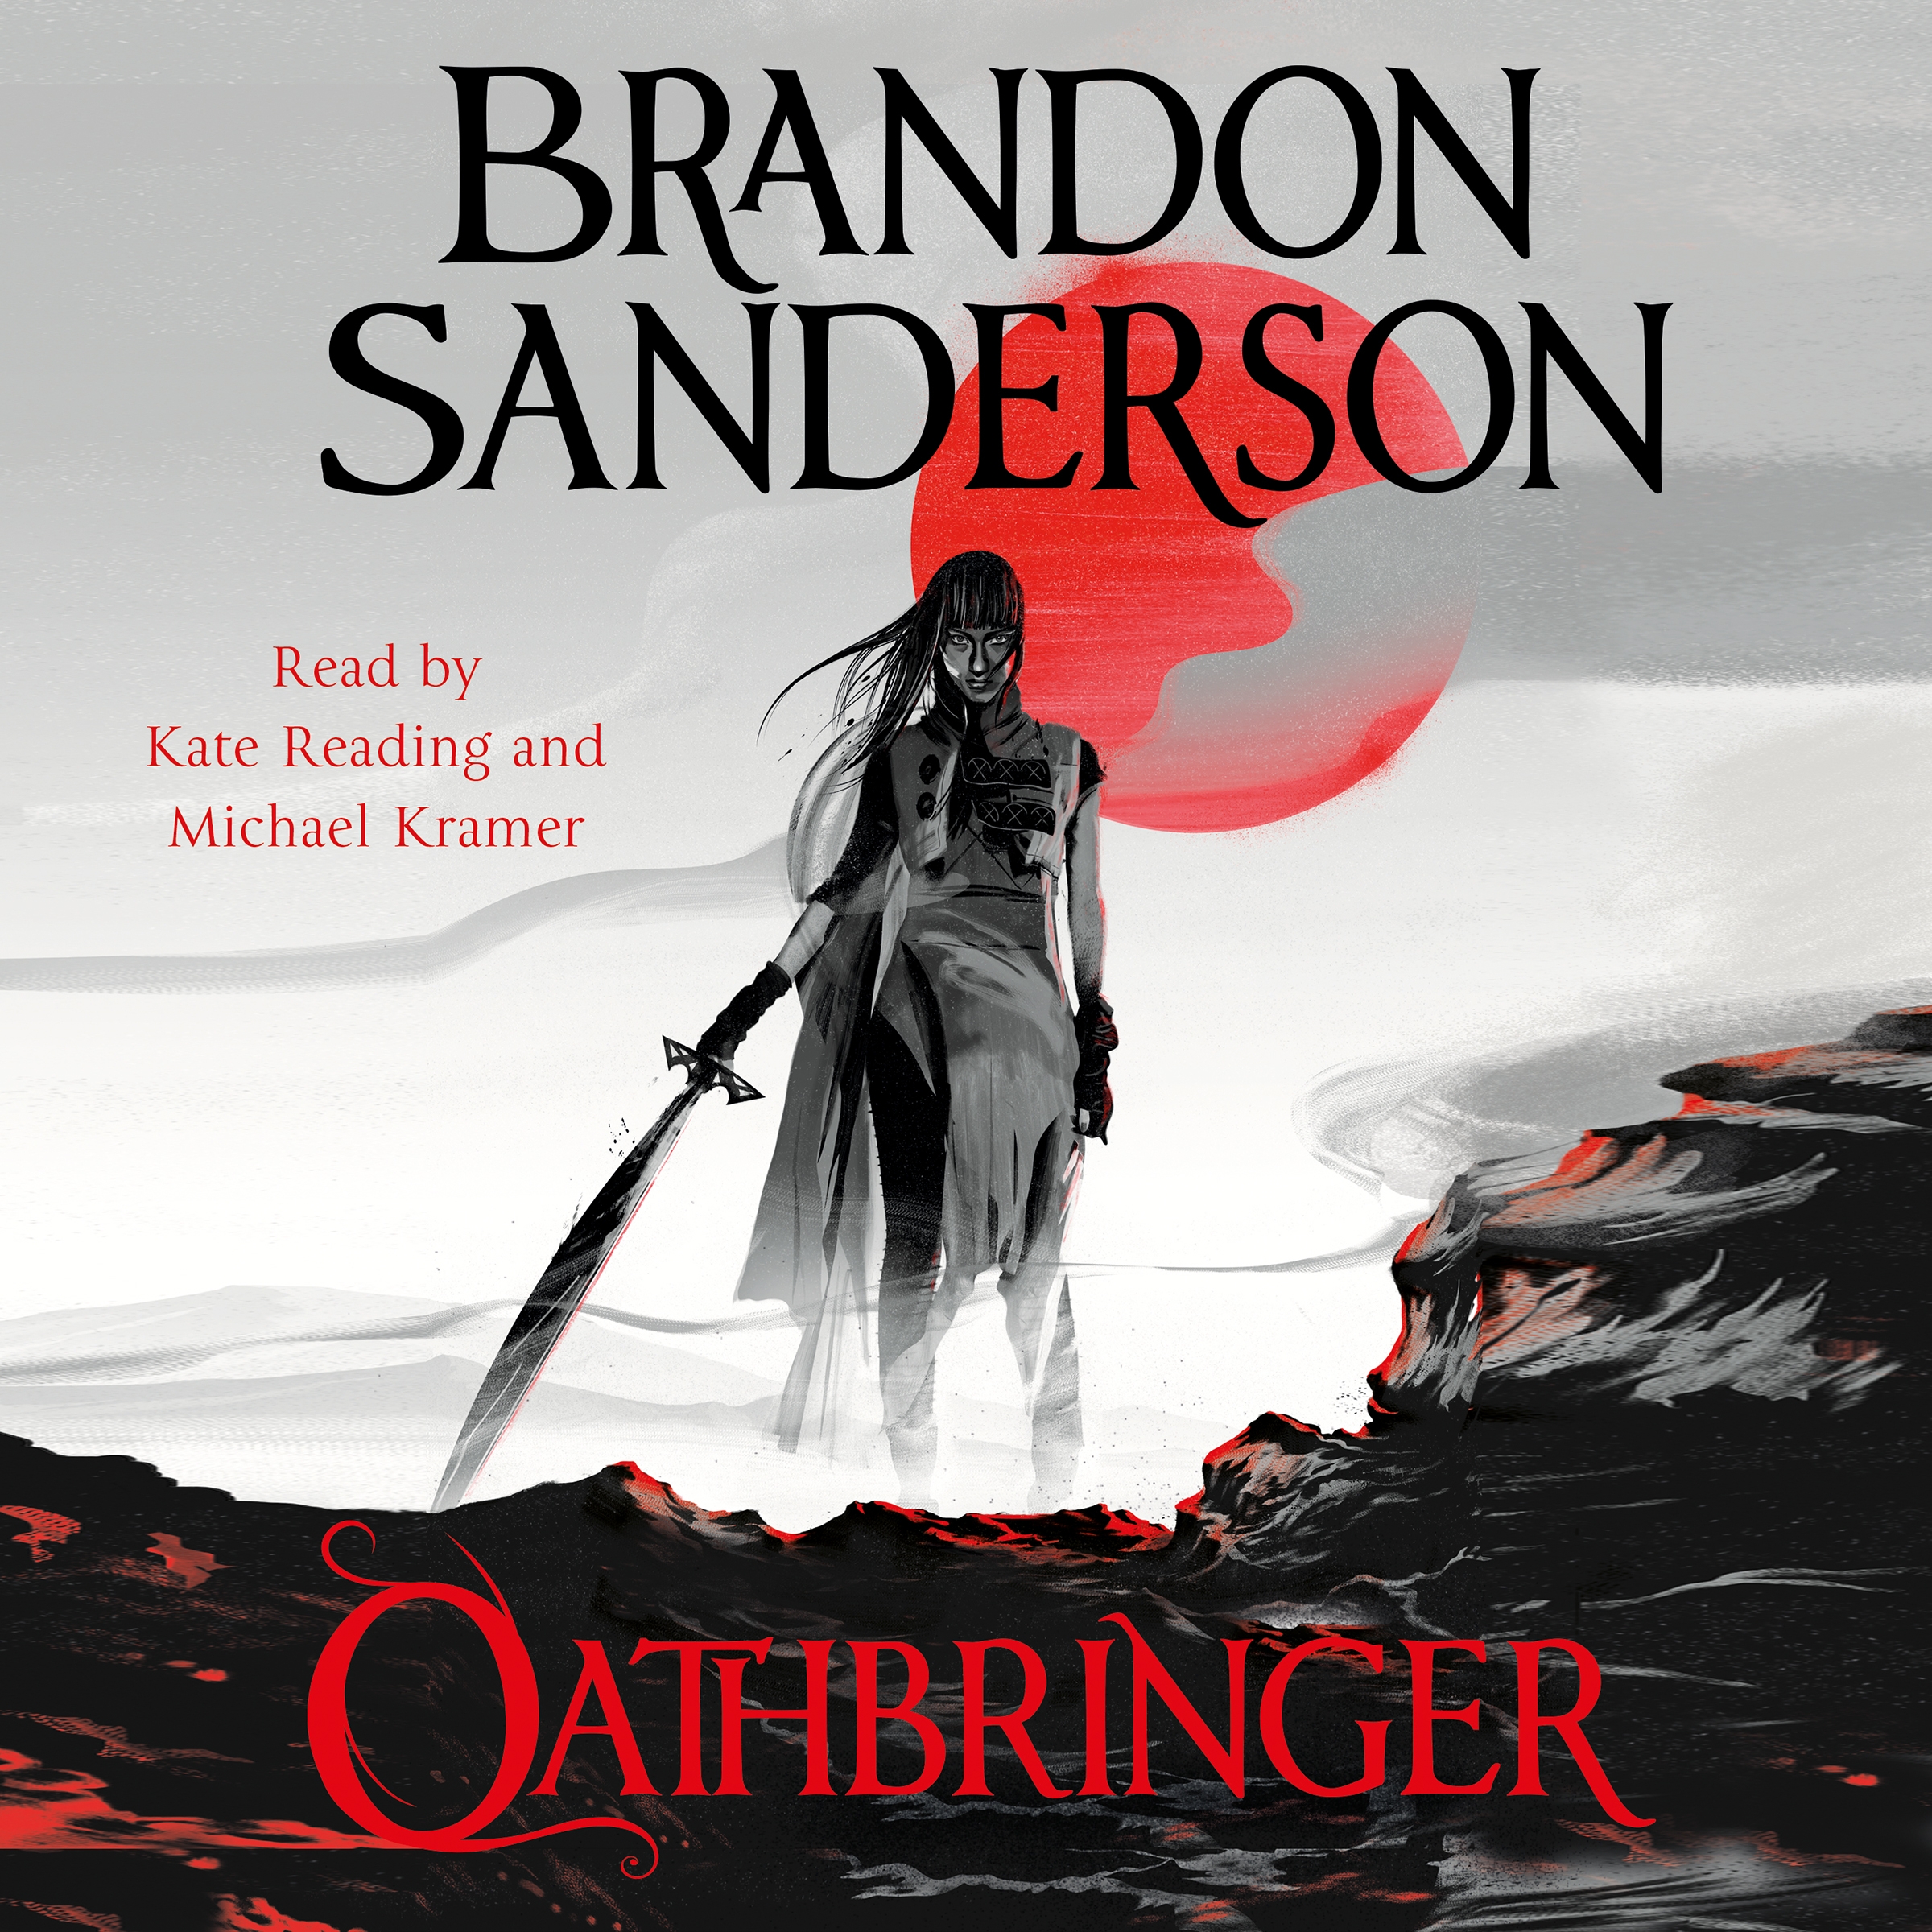 brandon sanderson oathbringer series